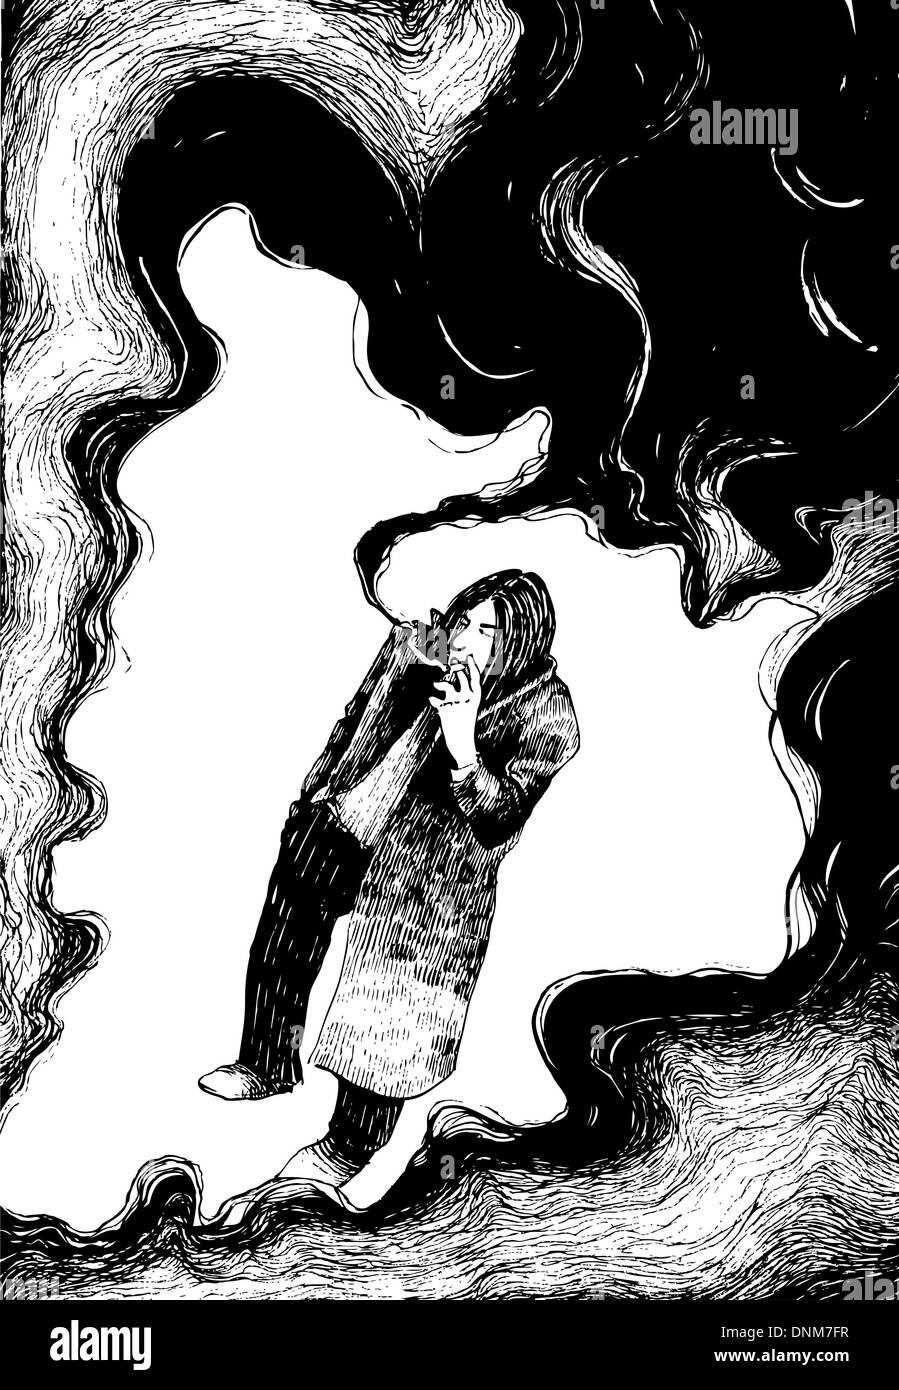 Ilustración de dibujo del hombre fumando un cigarrillo en las nubes de humo Ilustración del Vector